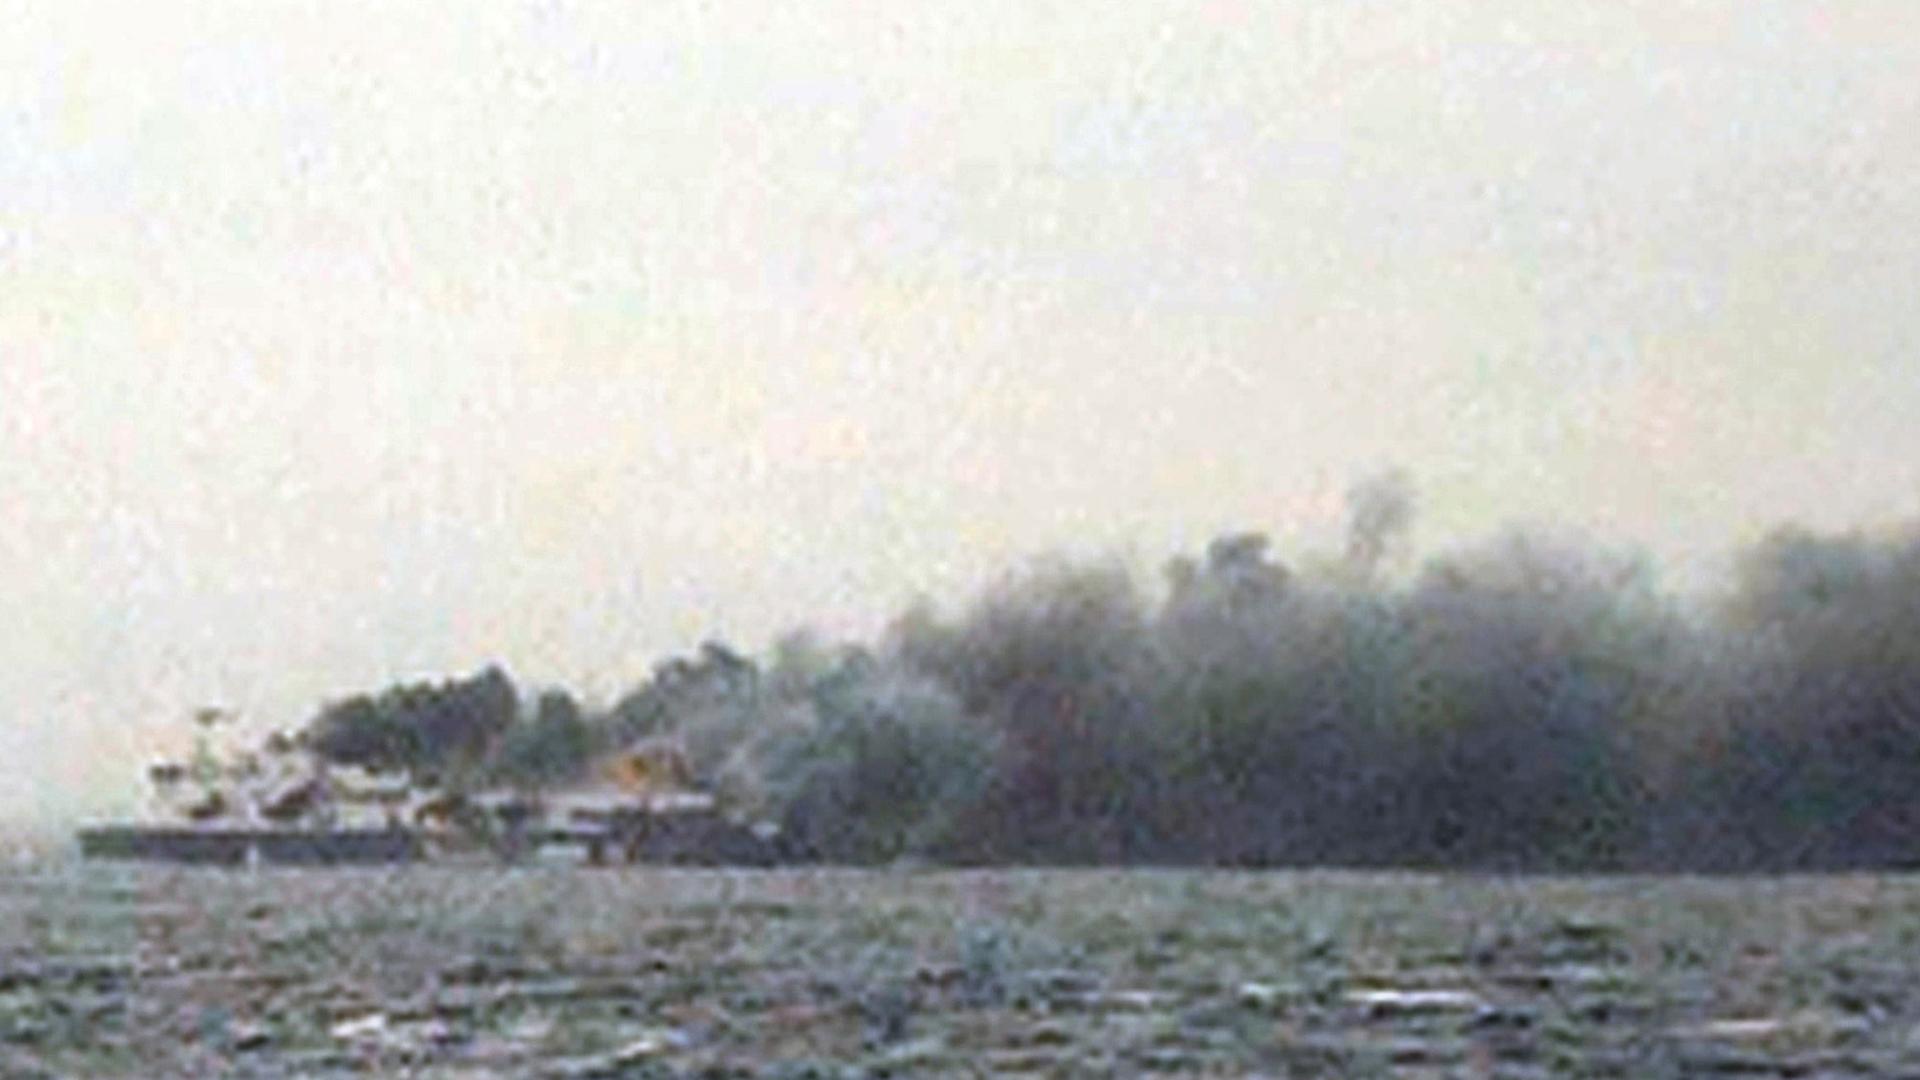 Ein abfotografiertes Fernsehbild des griechischen Fernsehsenders Skai zeigt die brennende Fähre "Norman Atlantic" in der Adria.